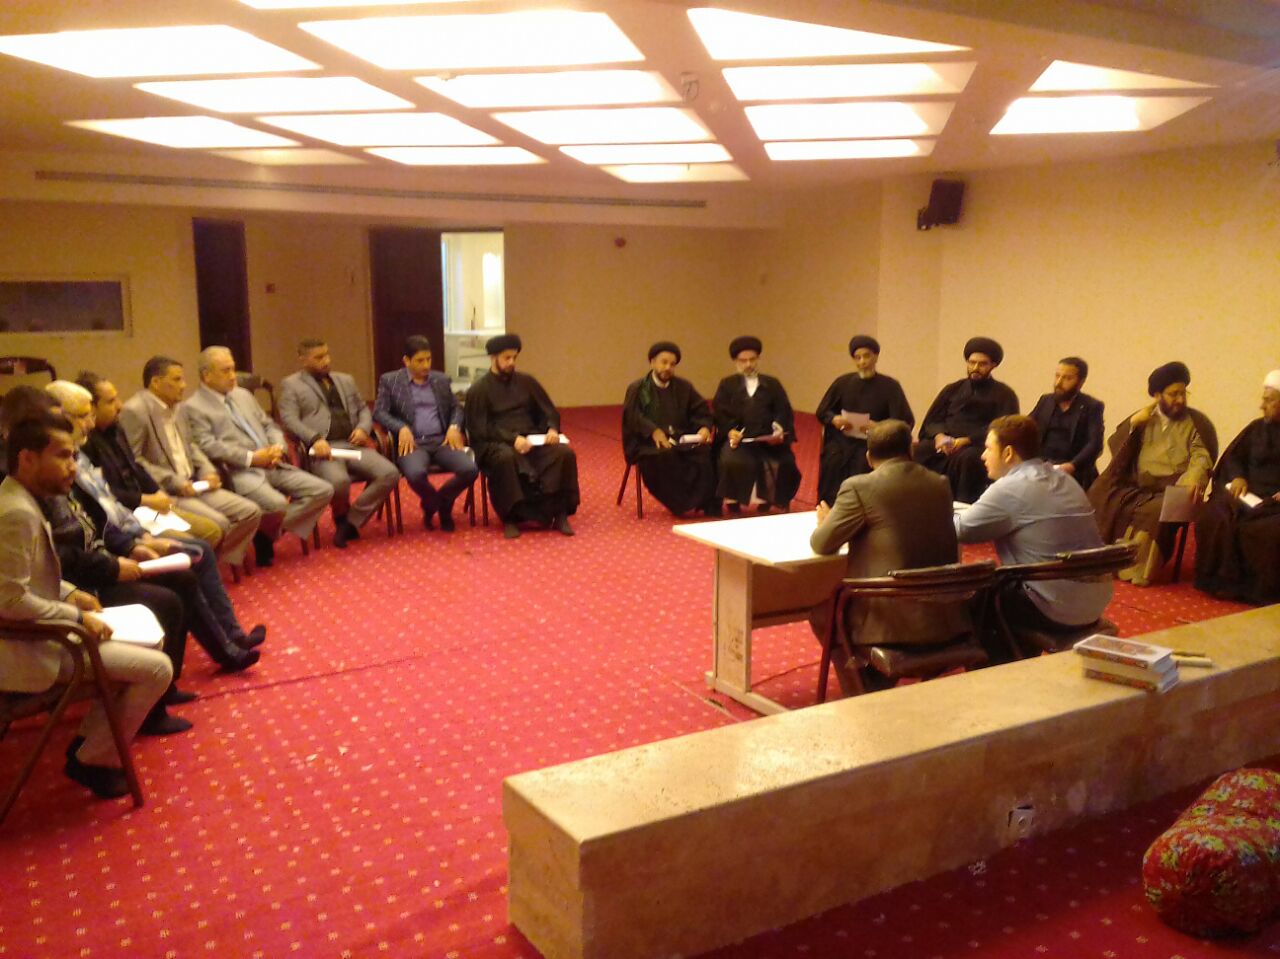 جلسه جمعی از فعالان فرهنگی از کشور عراق در سالن همایش مسجد نایب